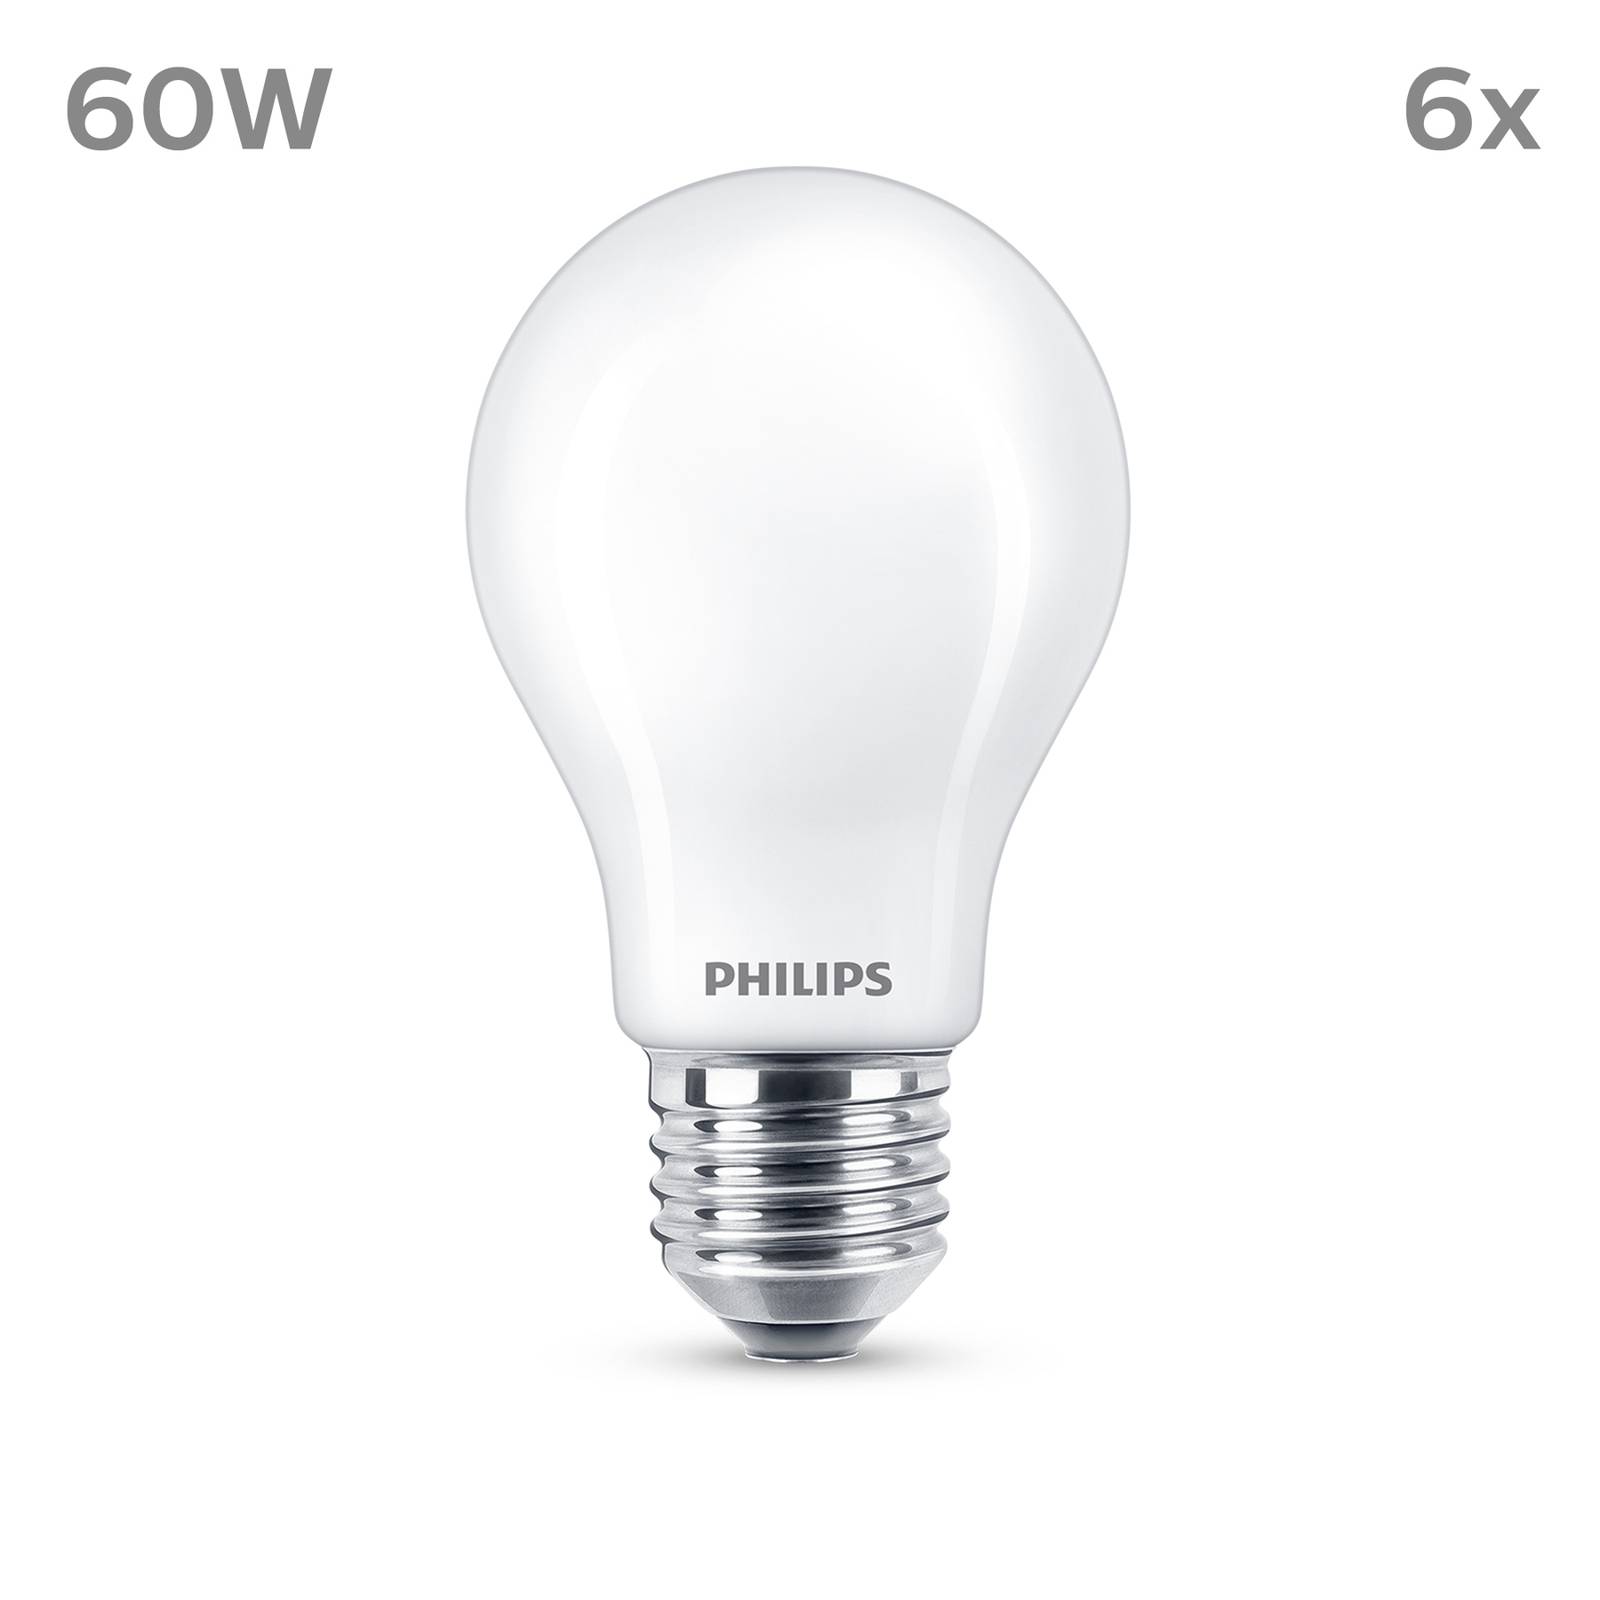 Philips LED žiarovka E27 7W 806lm 2700K matná 6 ks